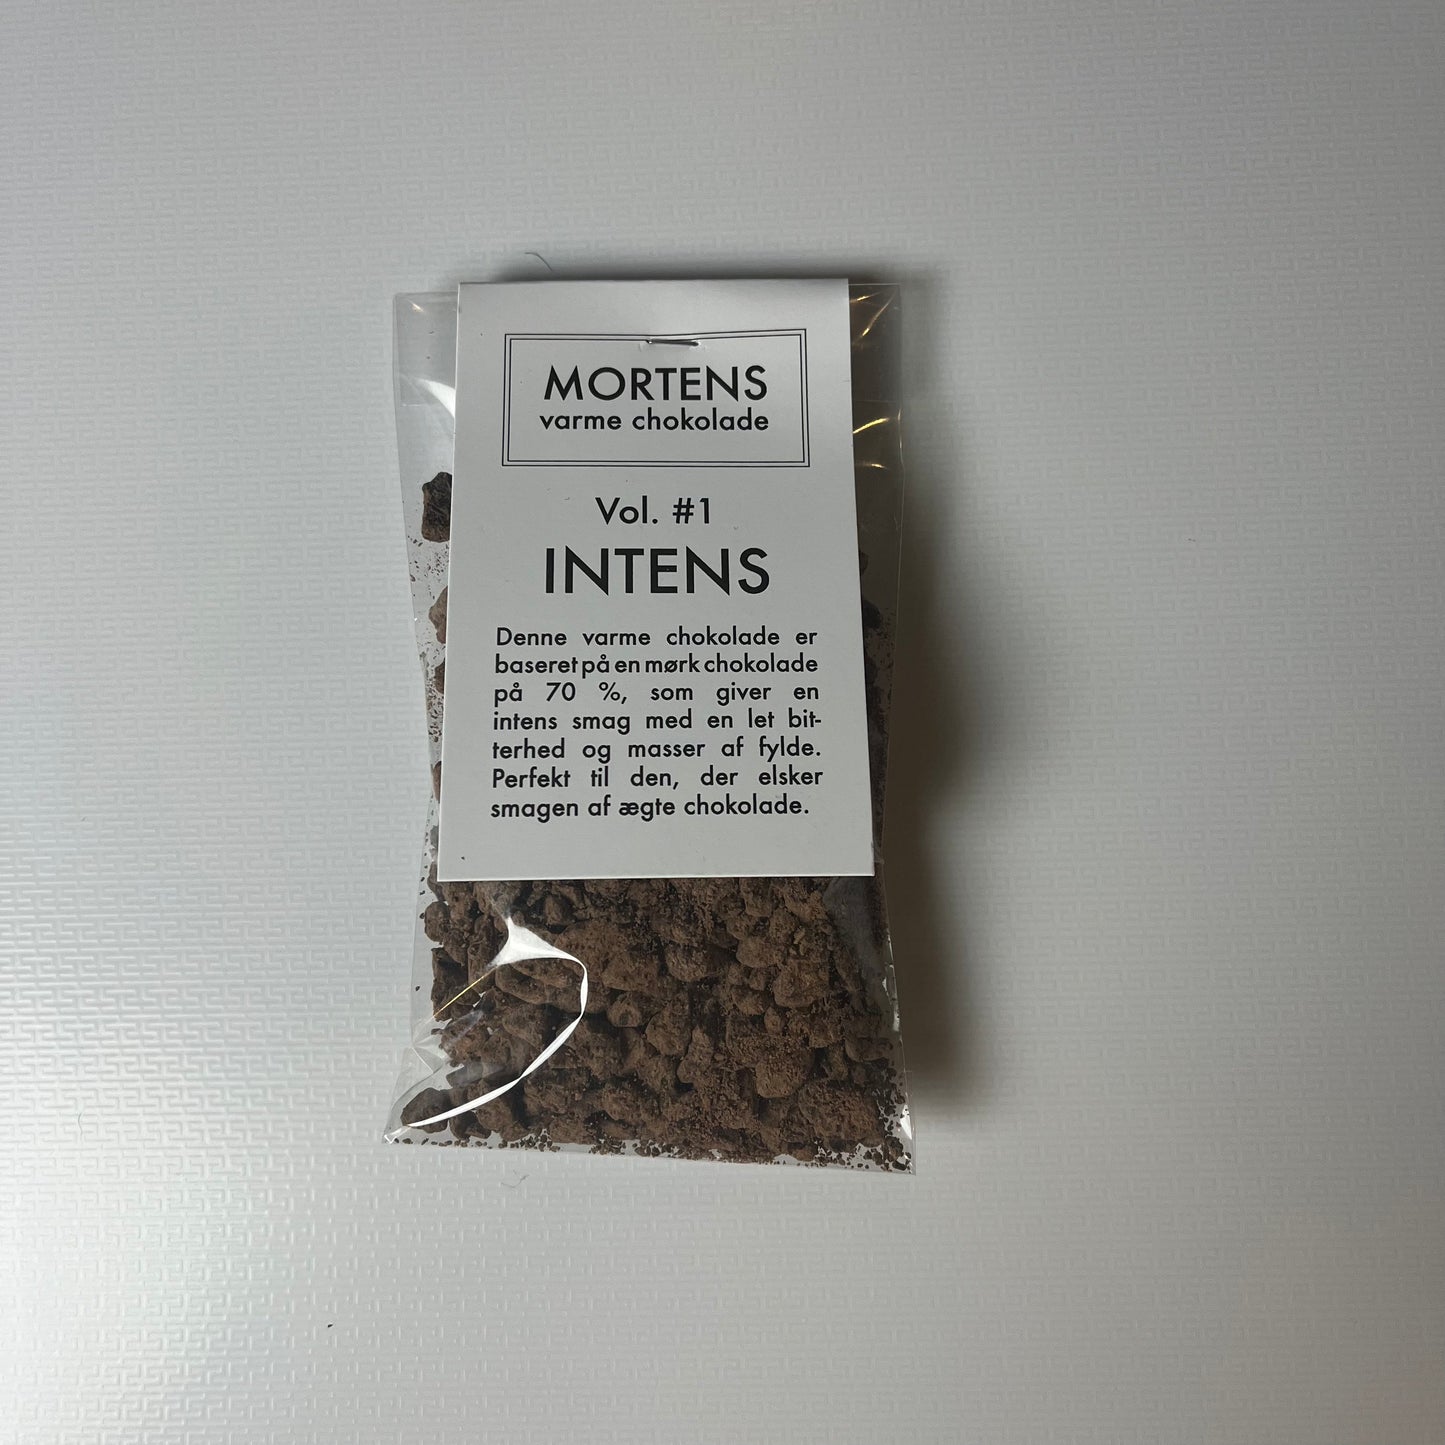 Mortens varme chokolade - 1 pose (INTENS)